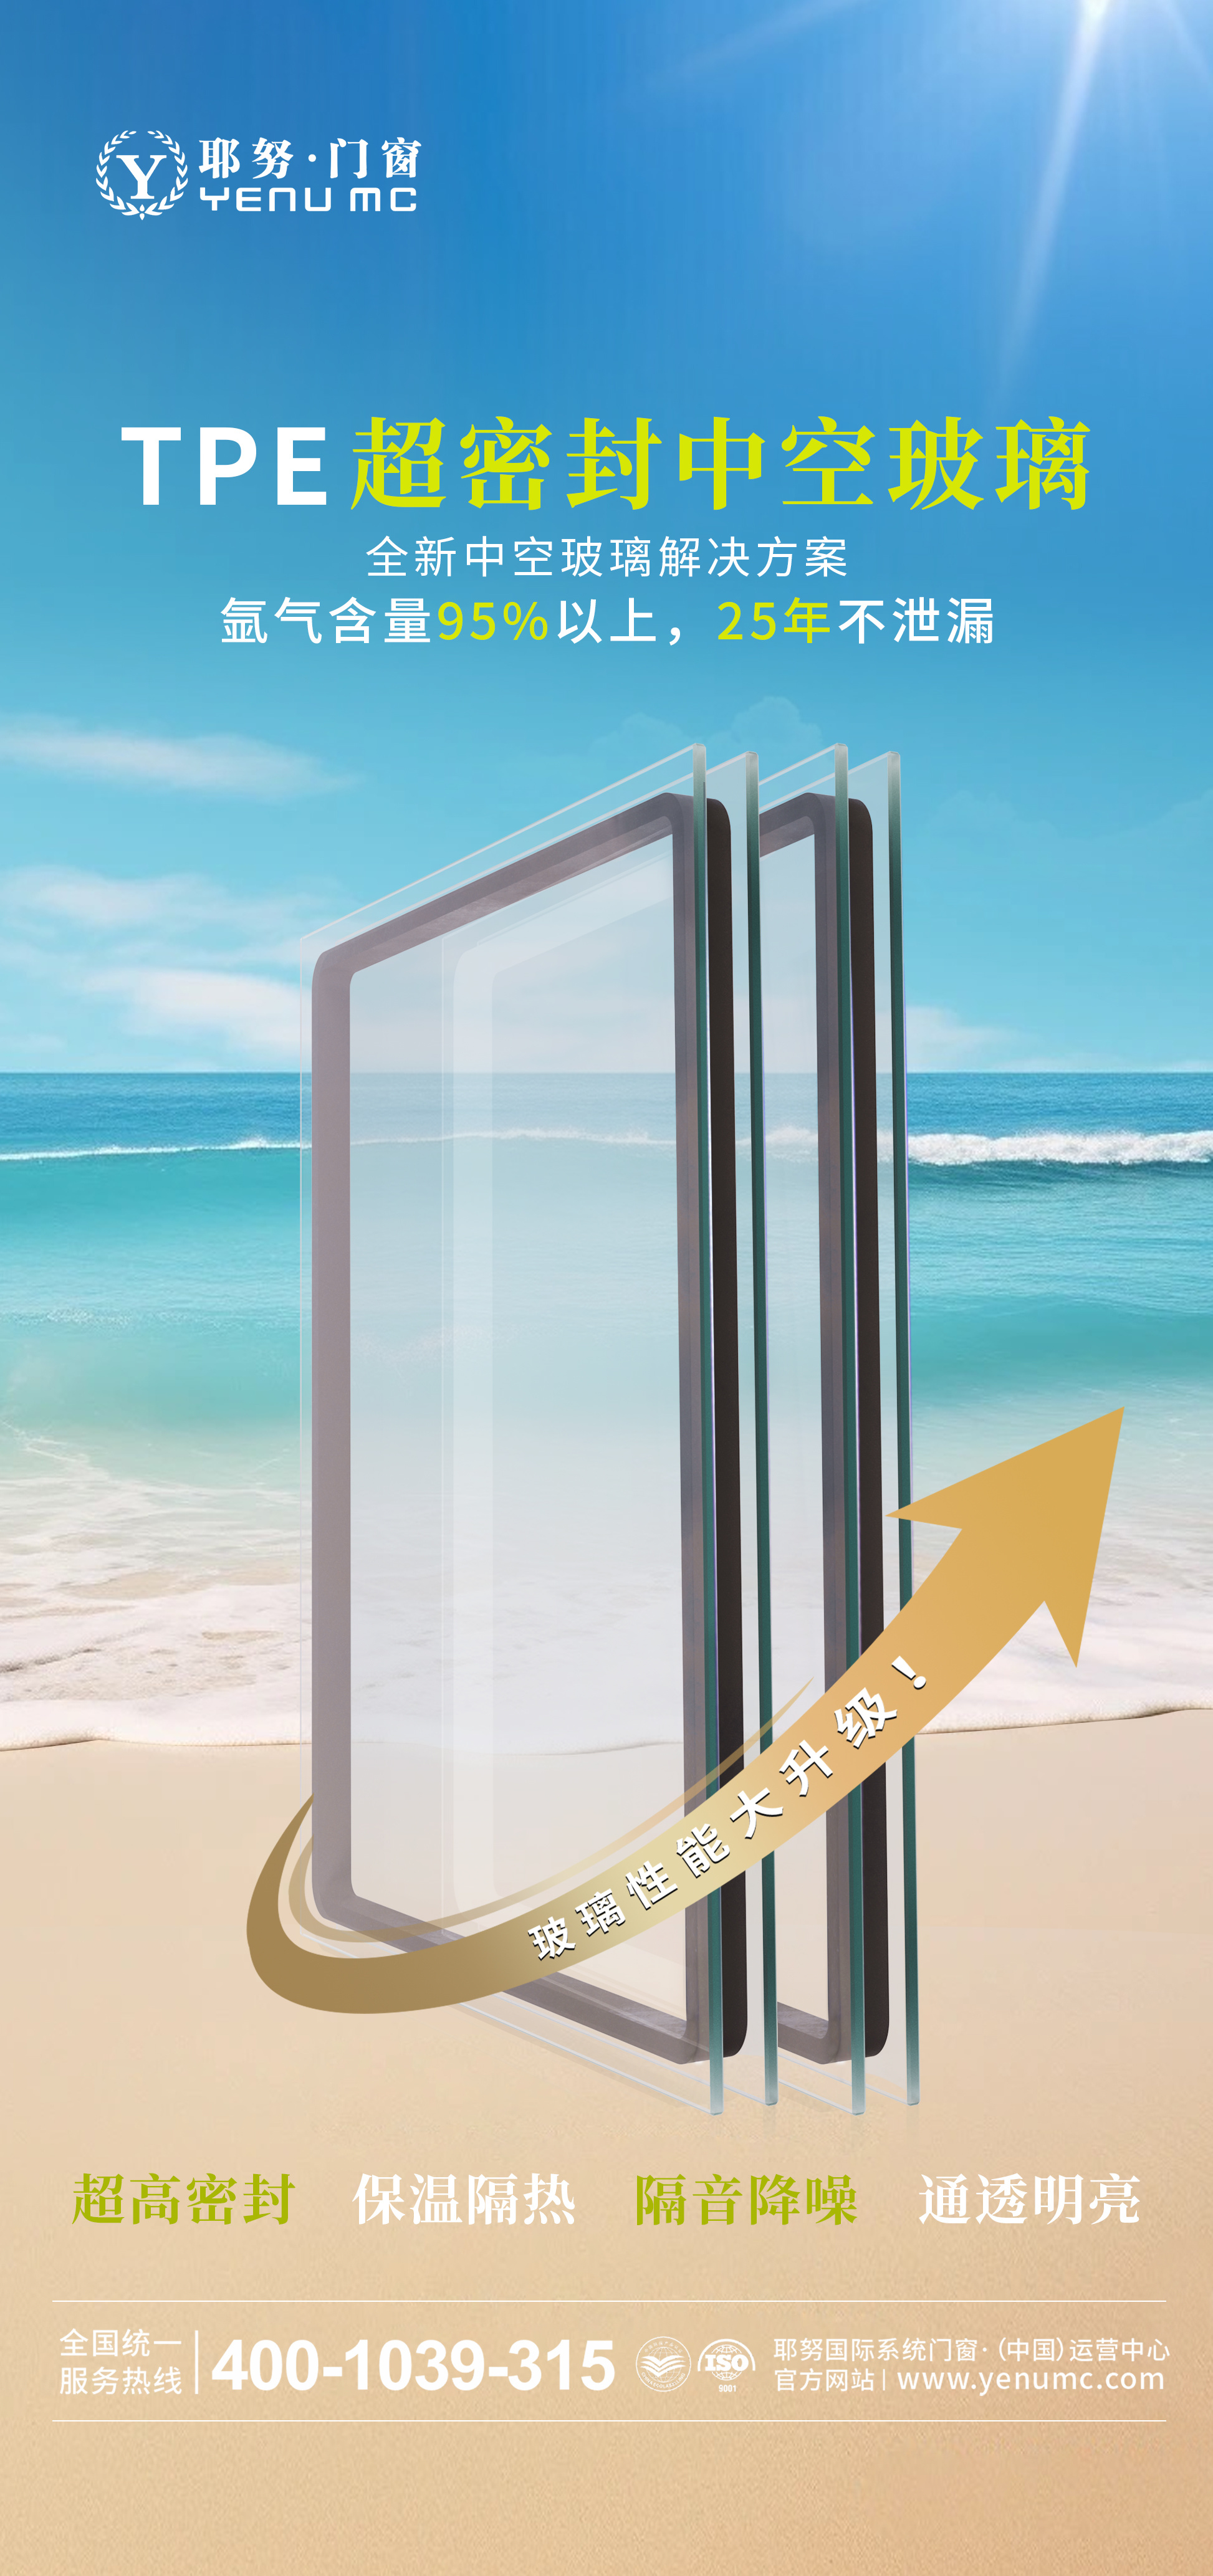 耶努TPE超密封中空玻璃丨引领家居门窗新潮流，提升家居舒适度